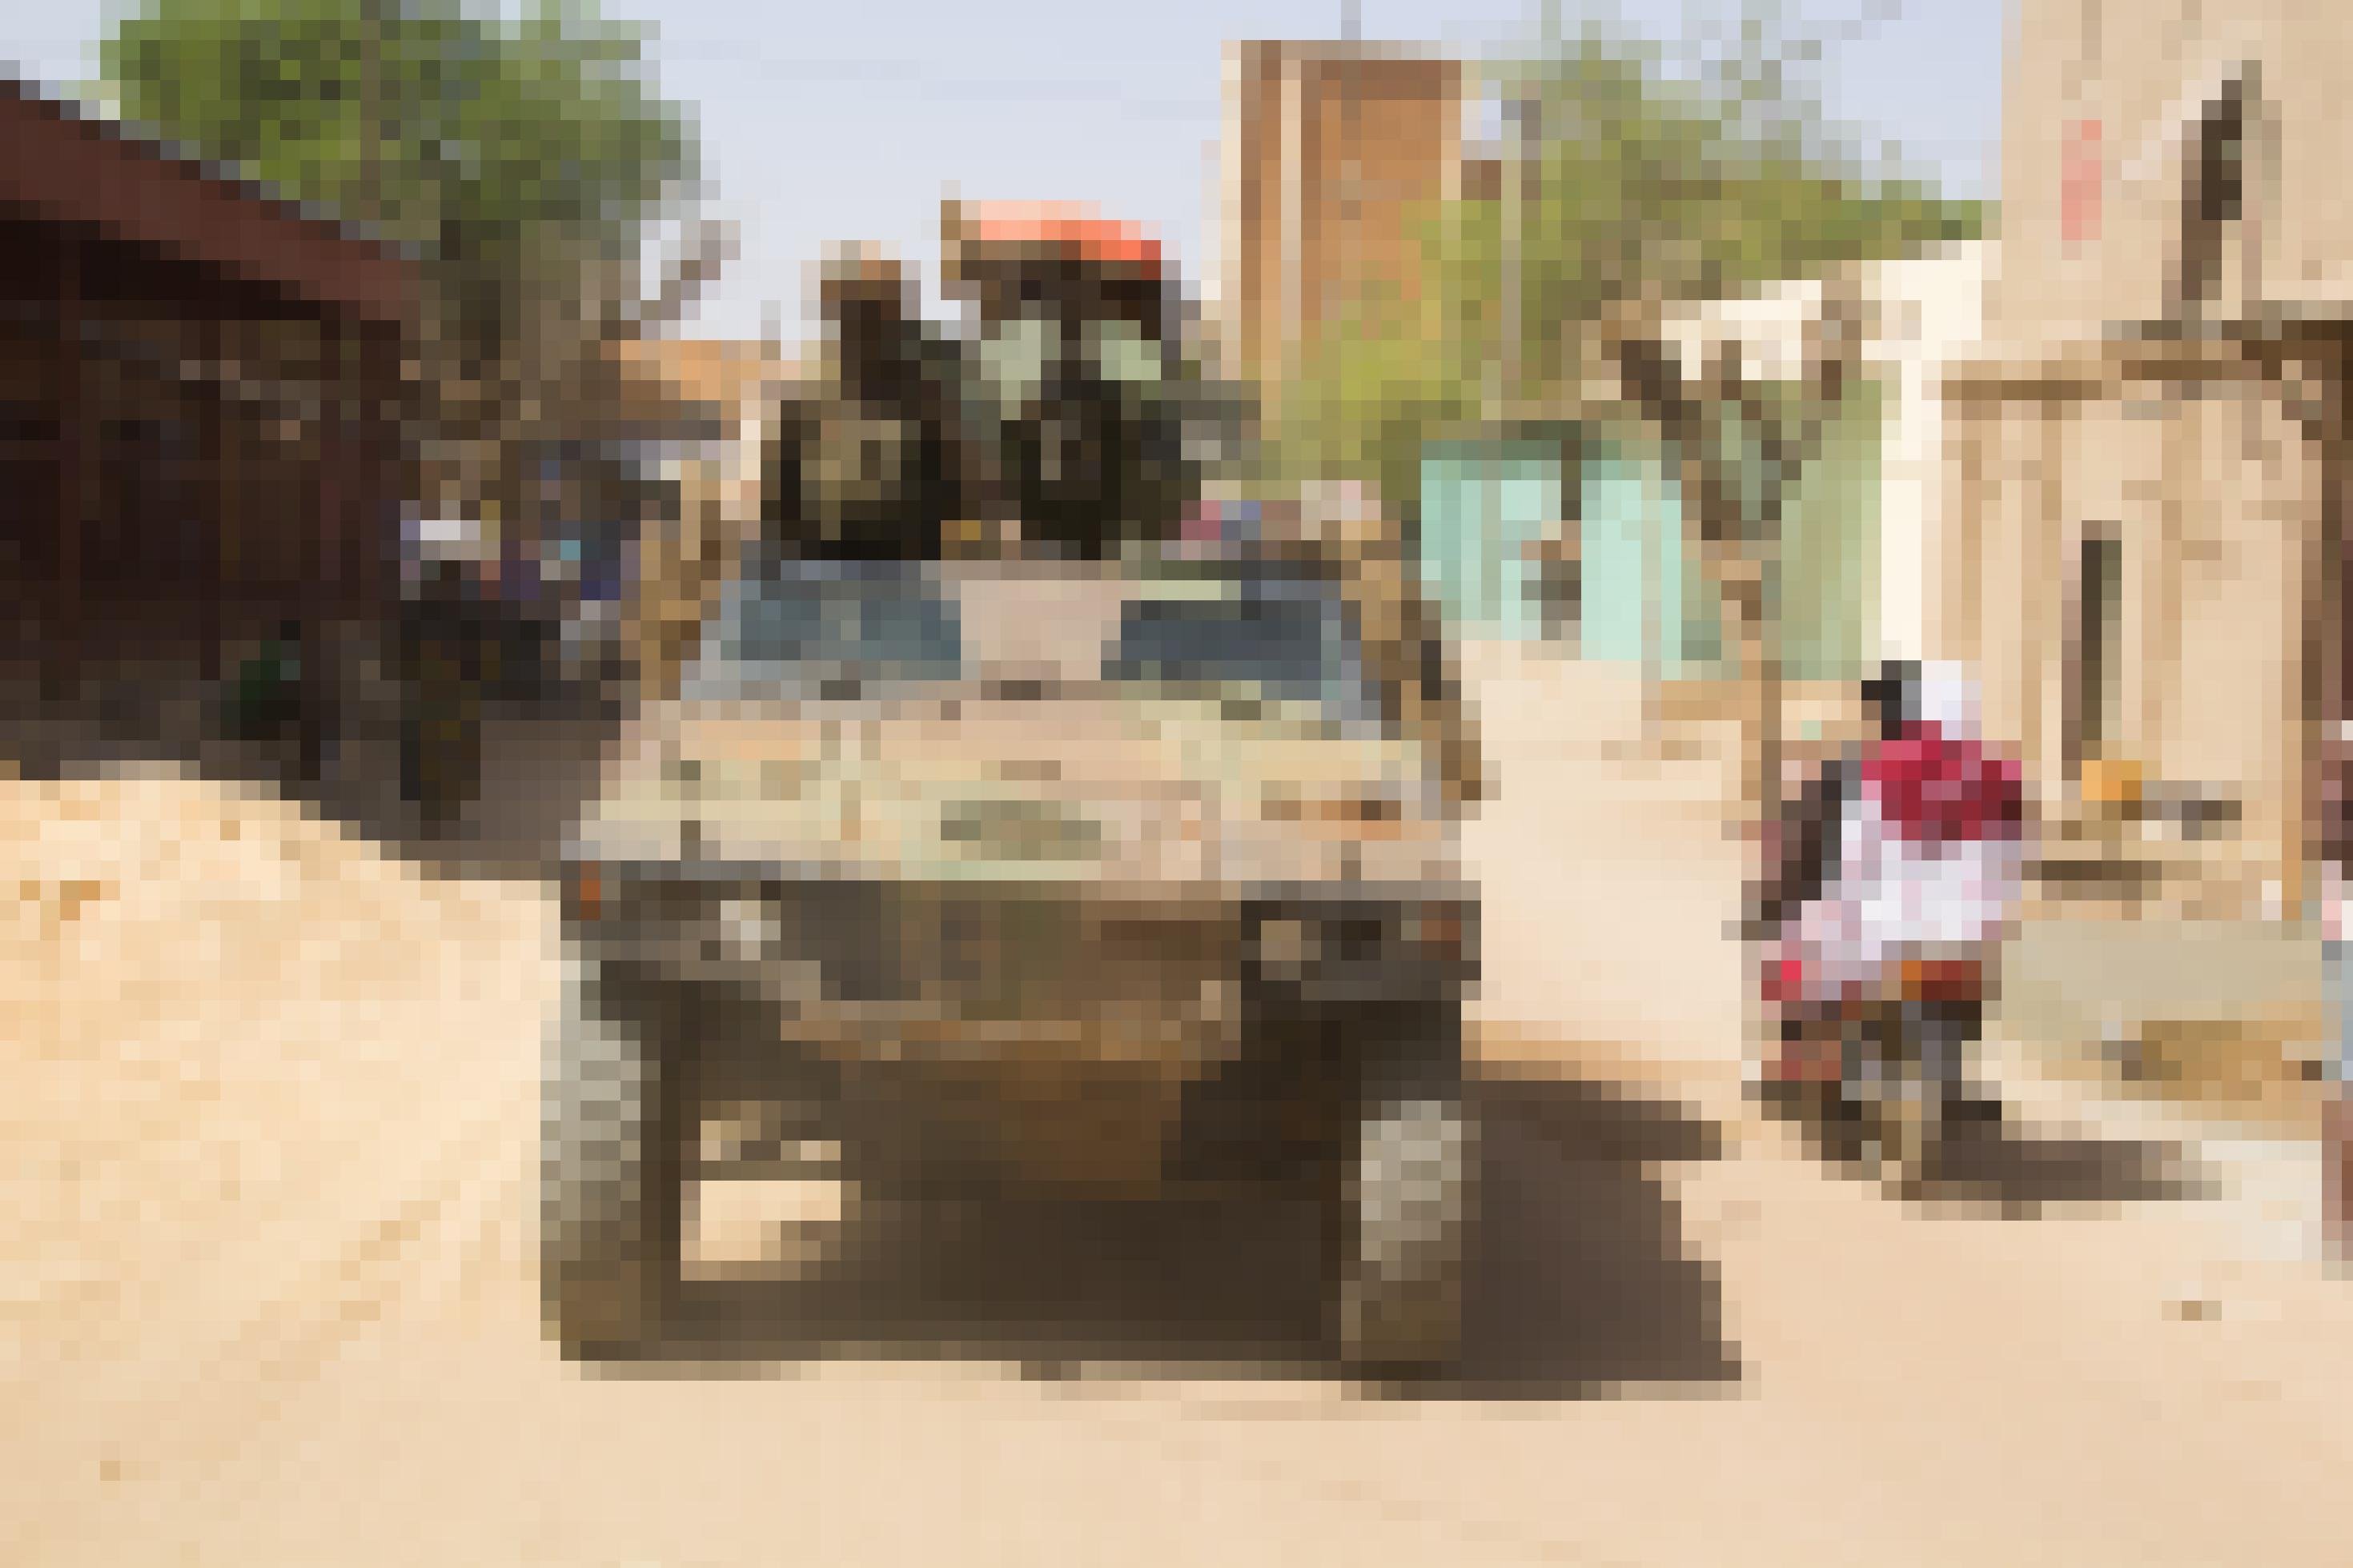 Soldaten der französischen Militäroperation „Barkhane“ patrouillieren auf dem Markt von Gao, einer Stadt im Norden von Mali. Zu sehen sind ein französischer Panzer, die Soldaten und ein malischer Mopedfahrer mit einer Frau auf dem Beifahrersitz, der an dem Panzer vorbei fährt. Außerdem Lehmhäuser und andere Gebäude, die die Marktstraße säumen.